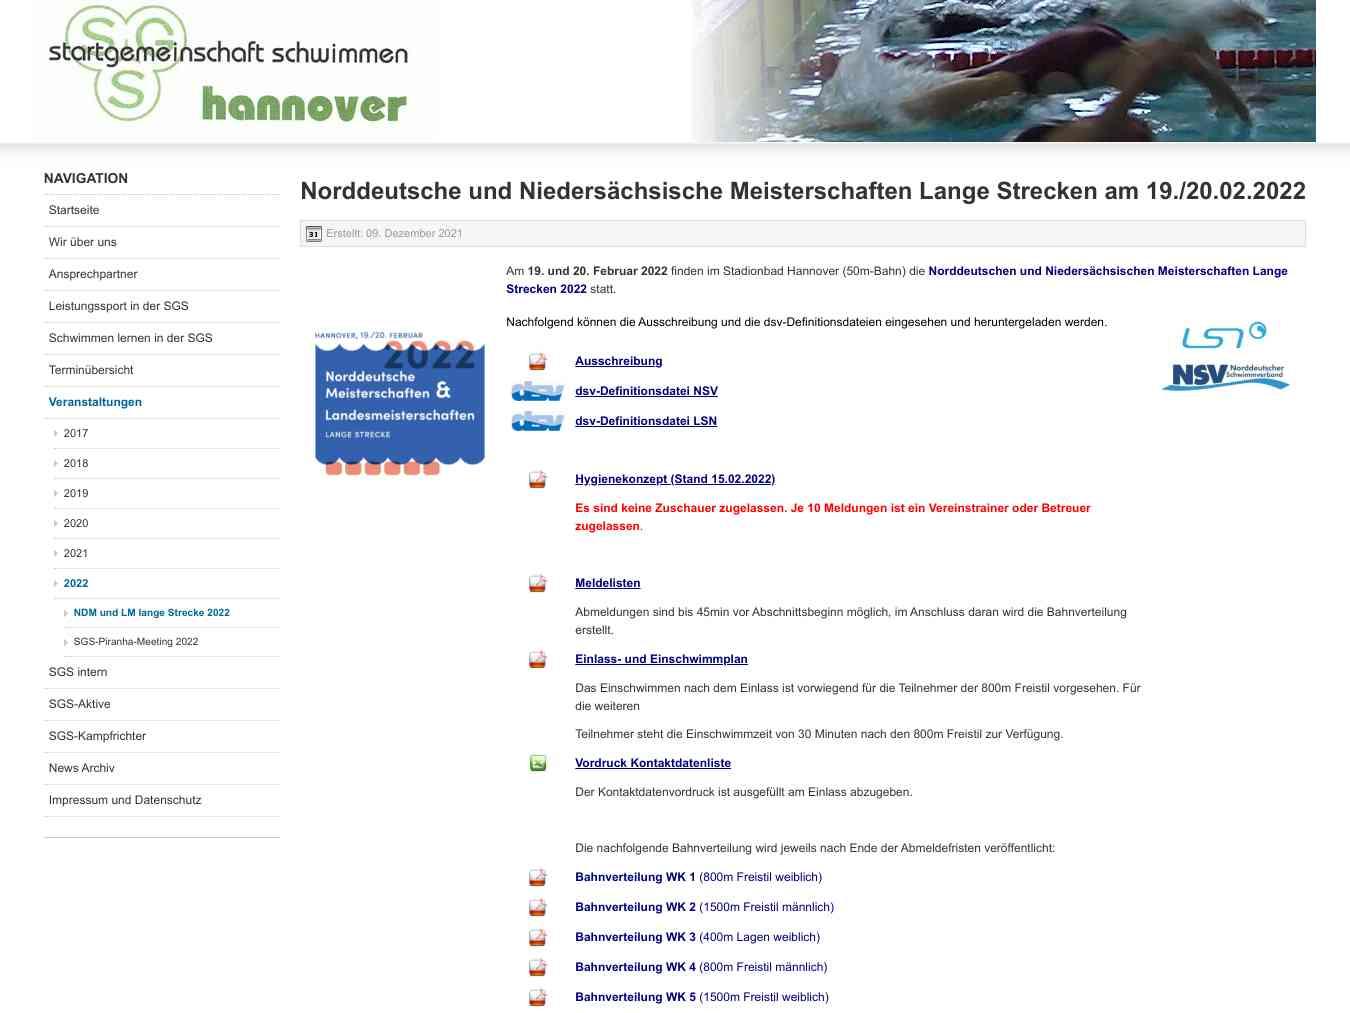 Veranstalterhomepage - https://sgs-hannover.de/index.php/veranstaltungen/2022/ndm-und-lm-lange-strecke-2022